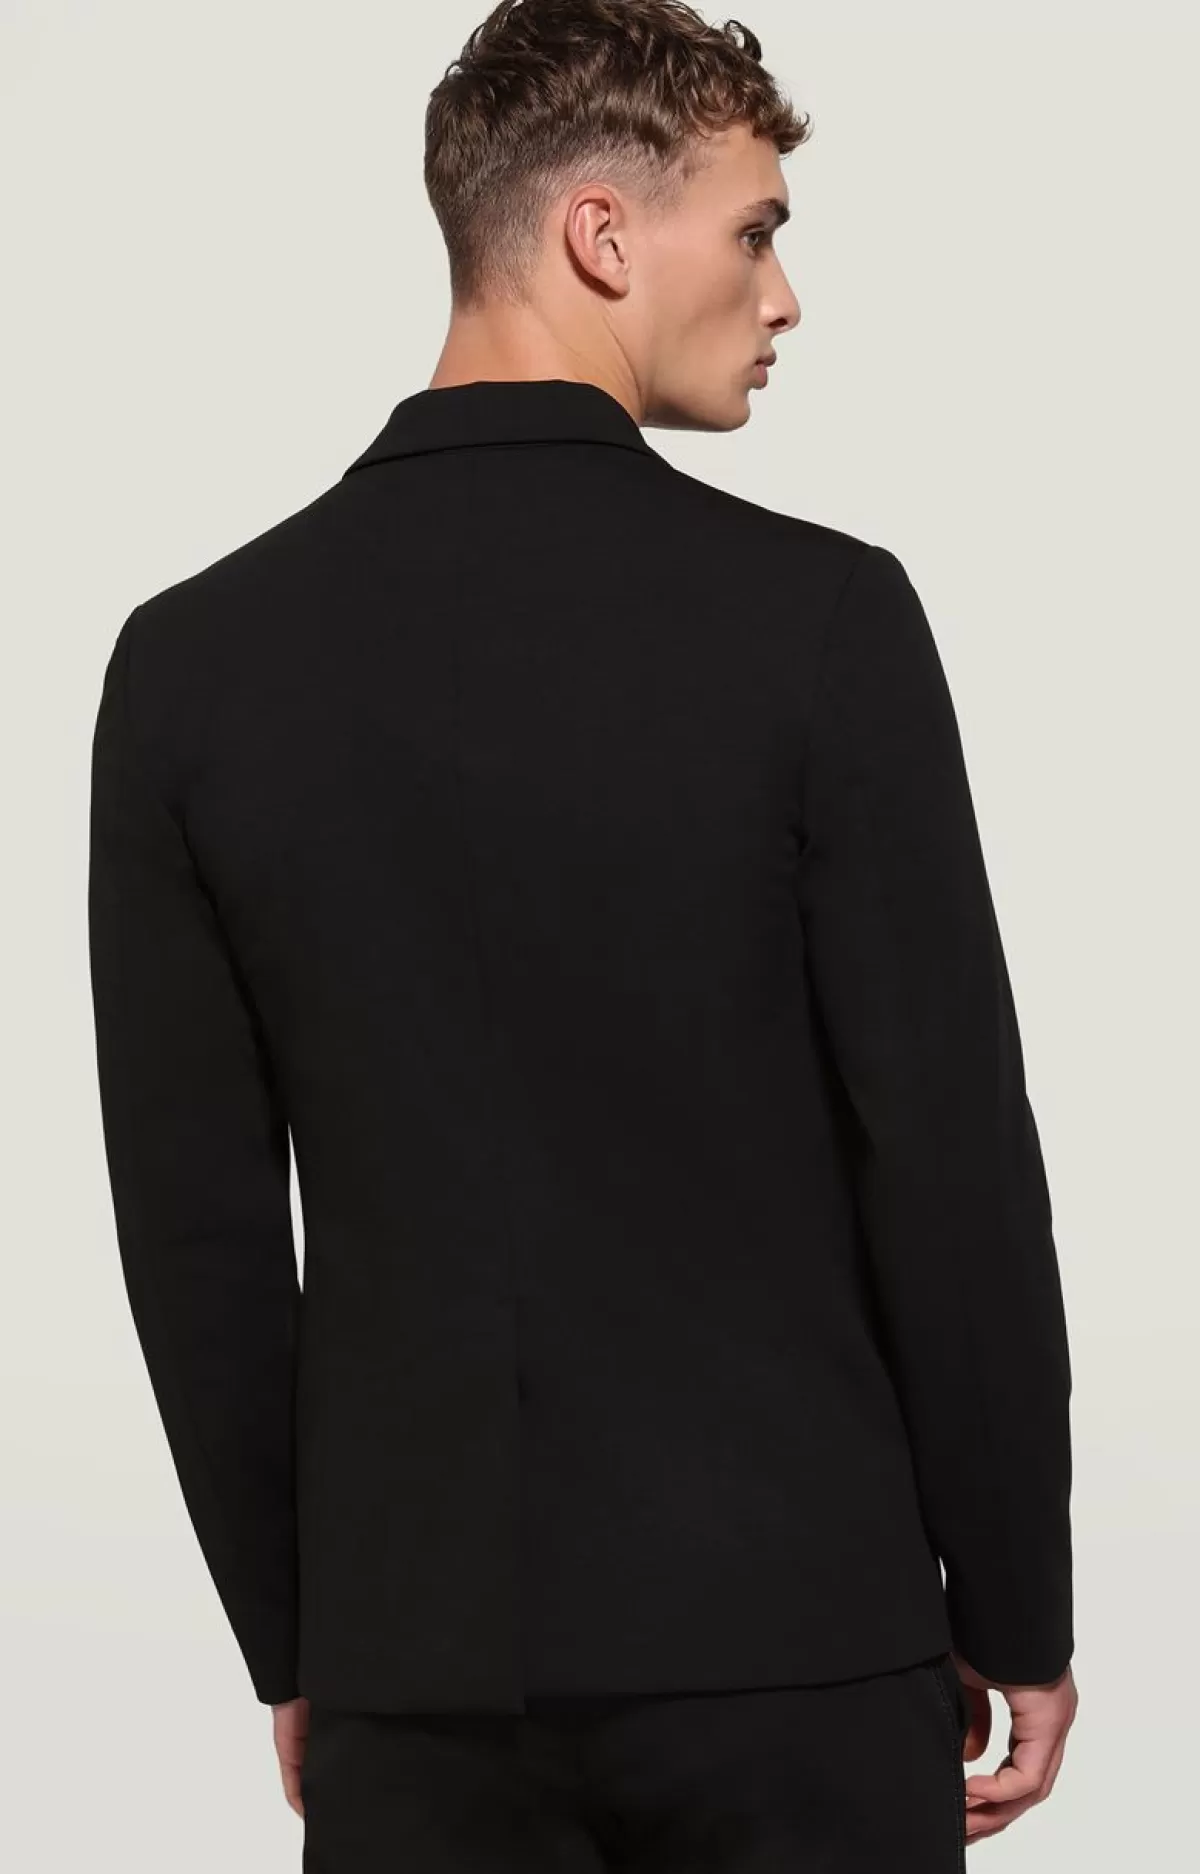 Bikkembergs Men'S Suit Jacket Black Outlet